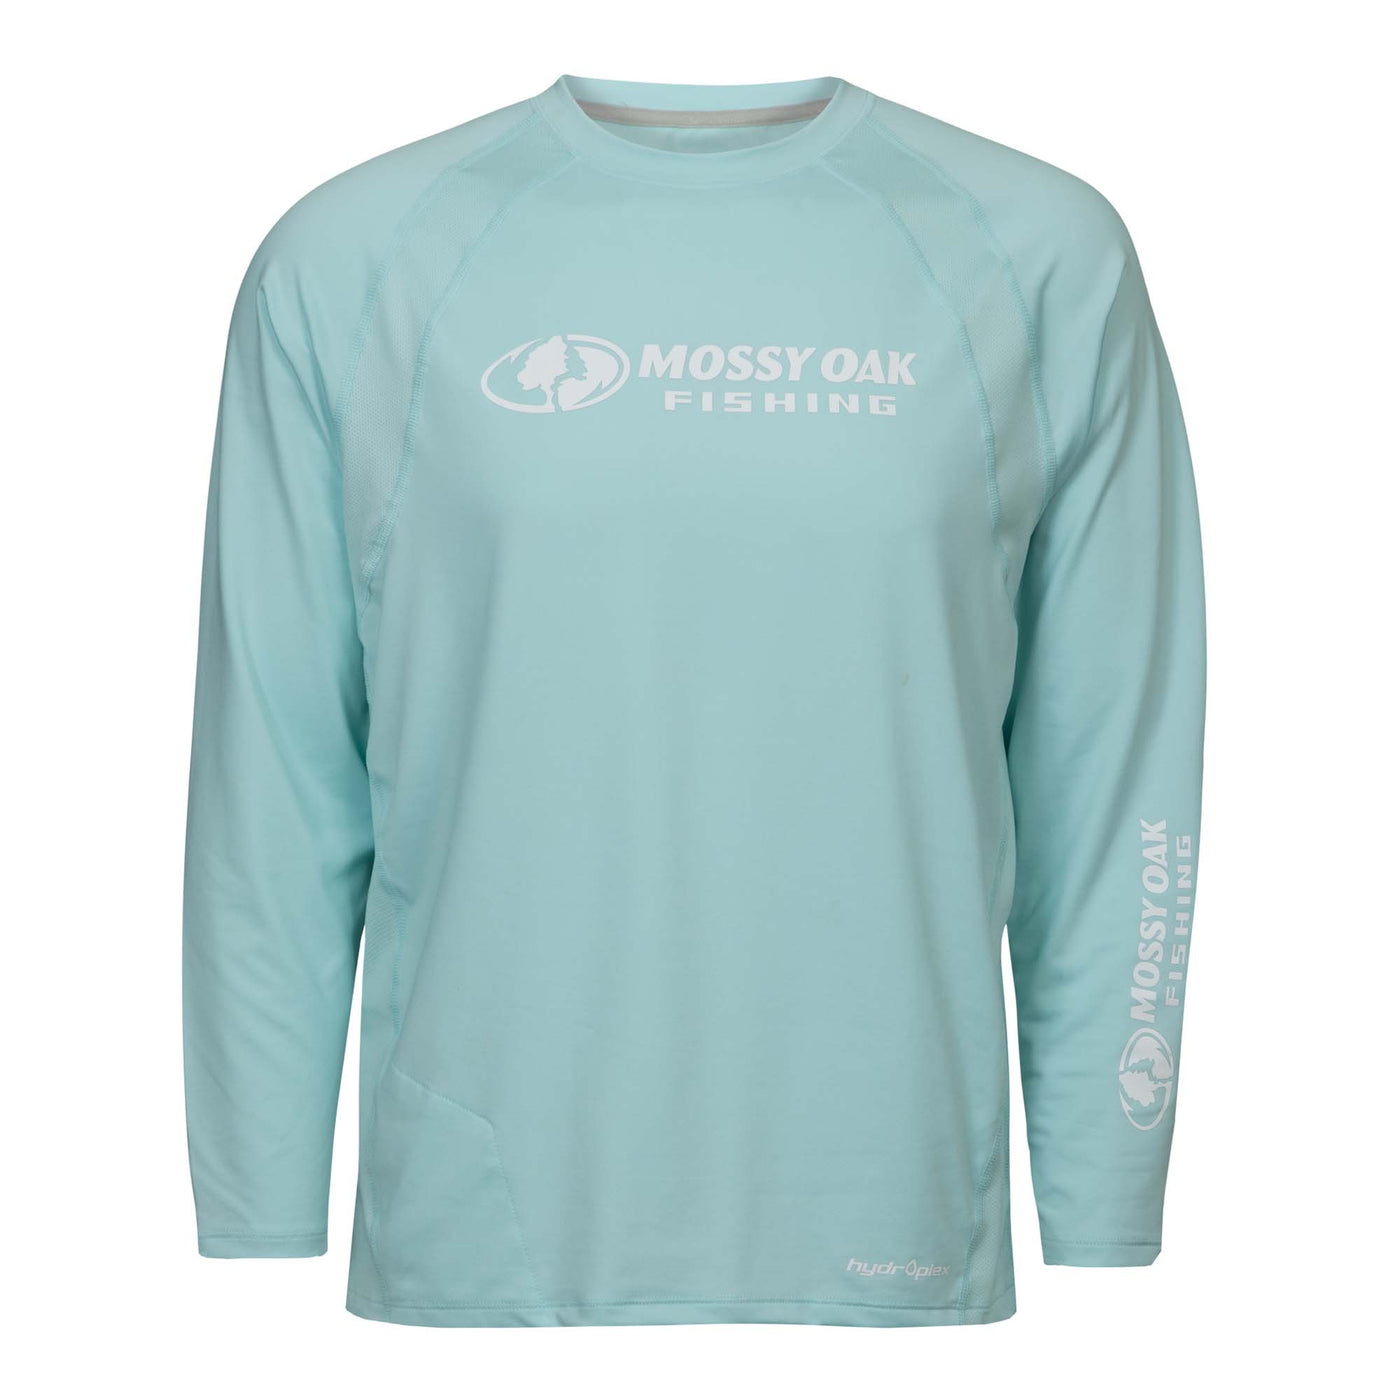 Mossy Oak Men's Long Sleeve Fishing Tech Shirt